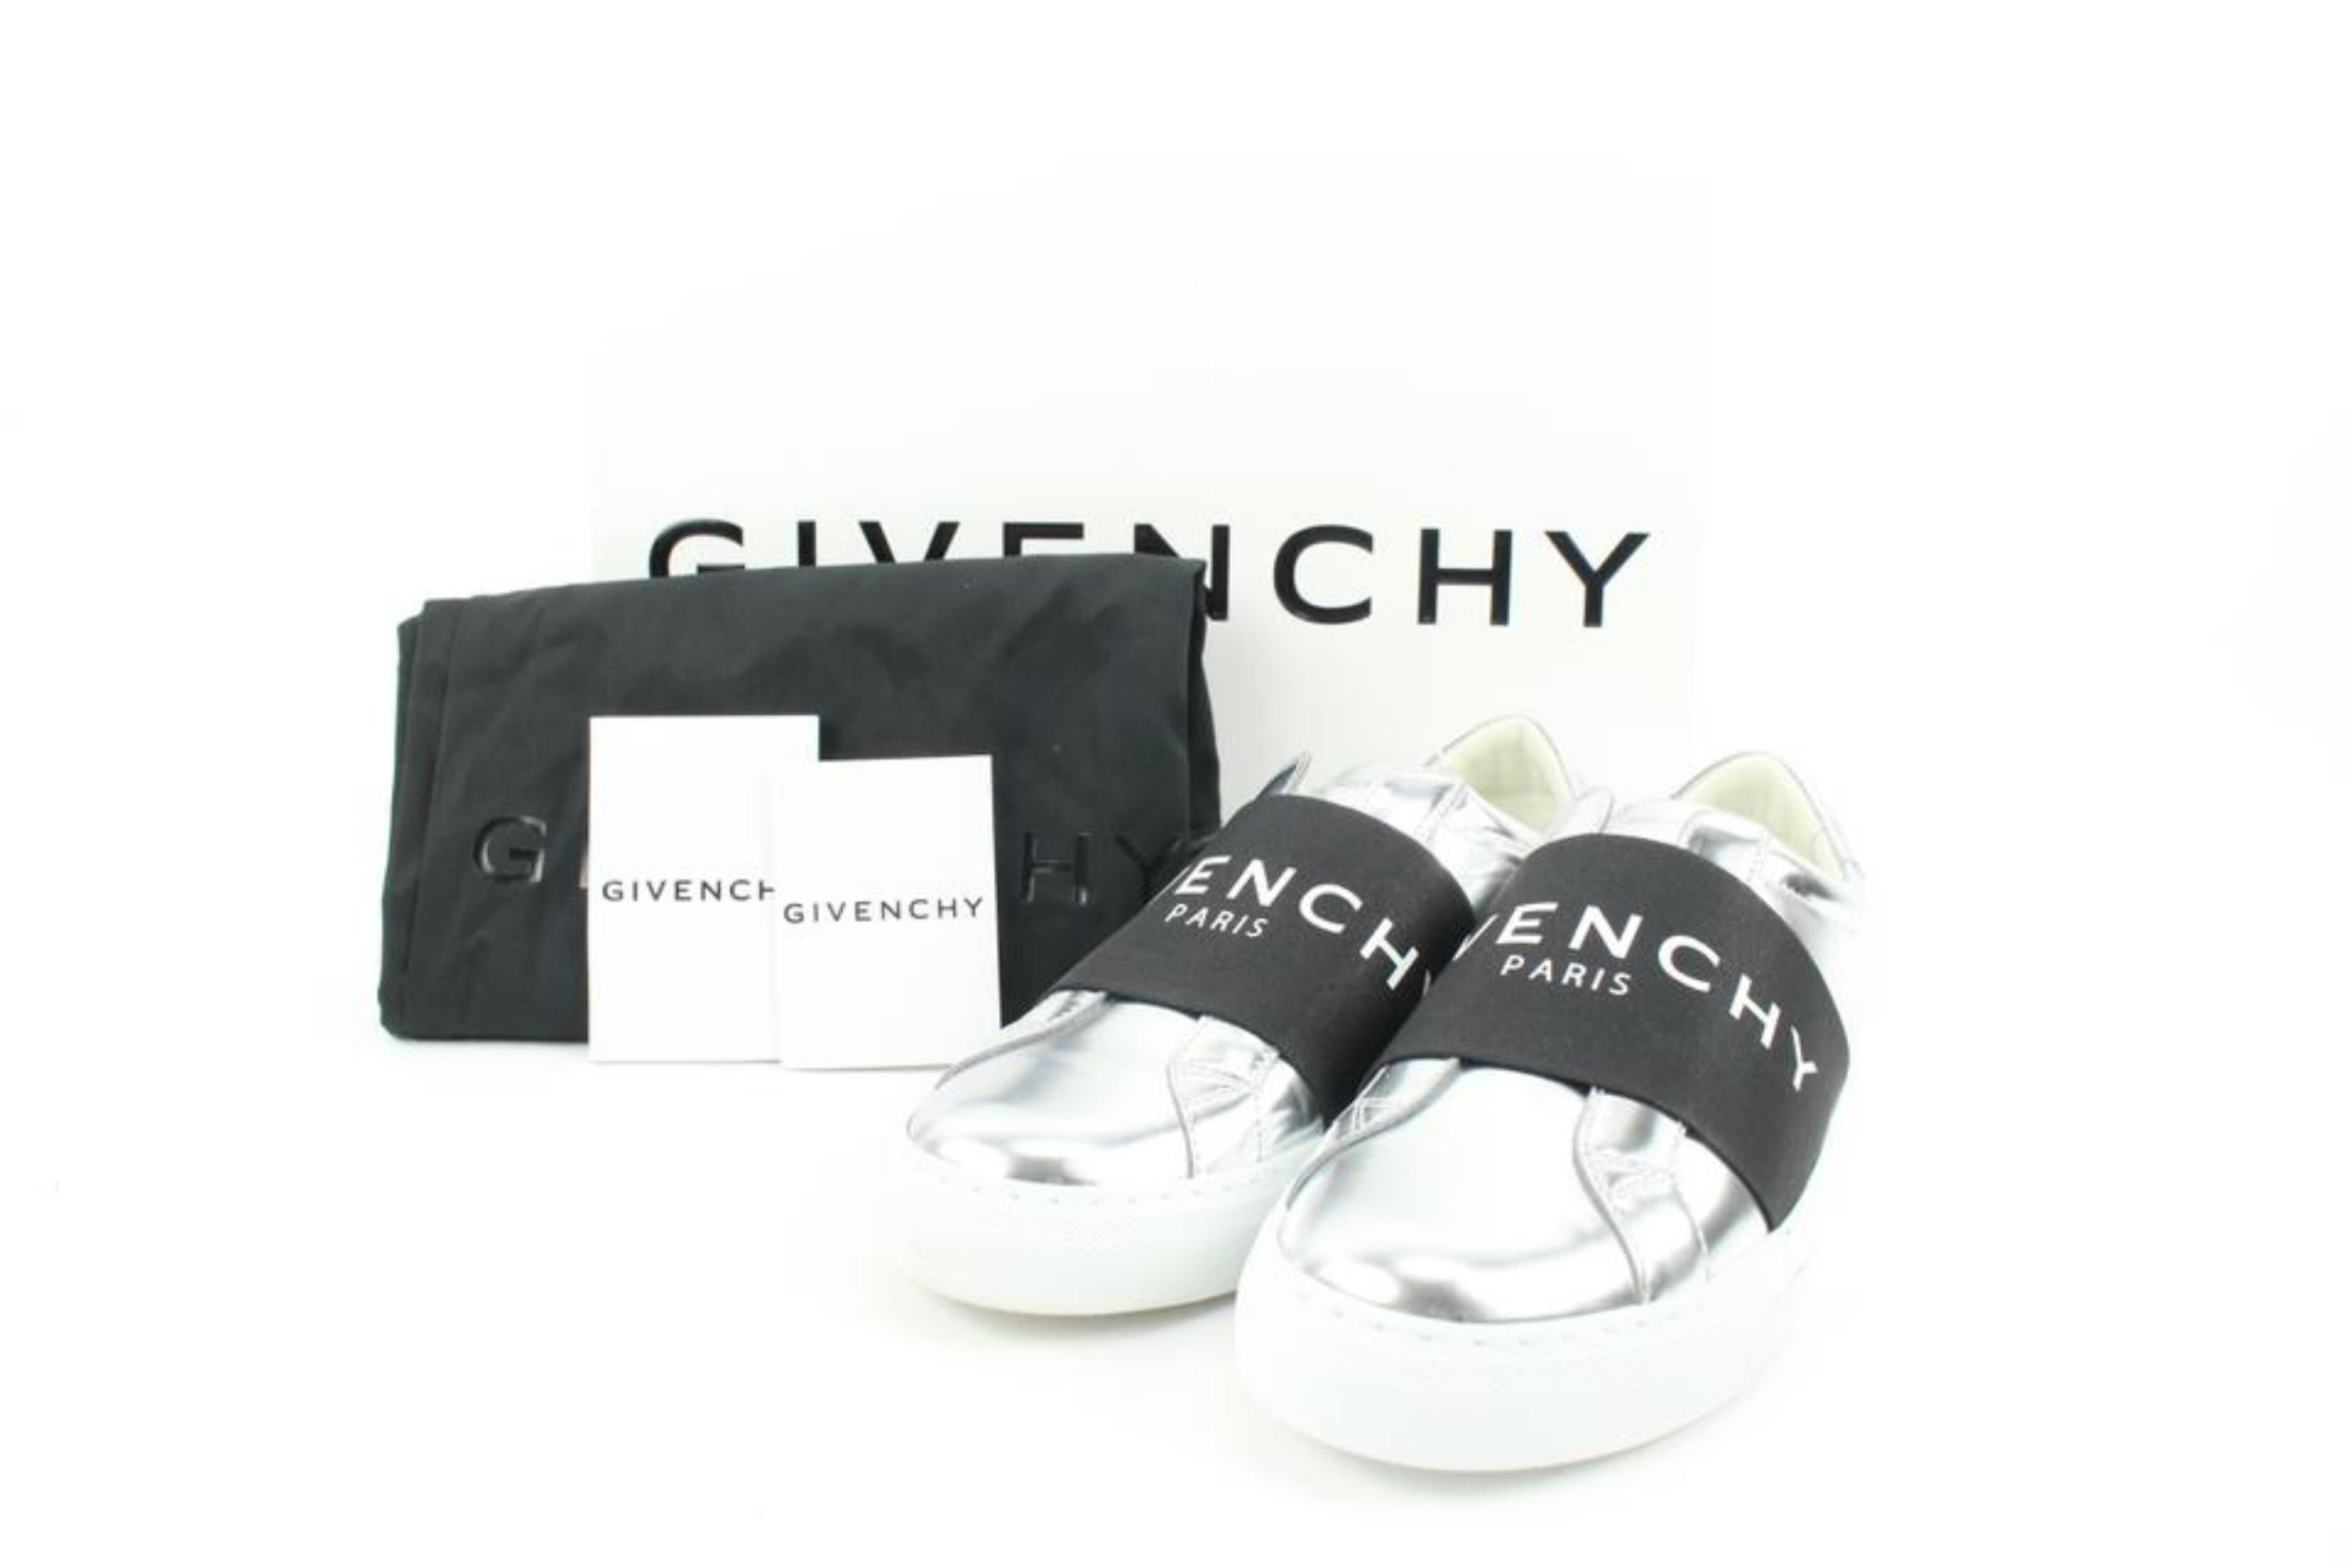 Givenchy Women's 35.5 Silver x Black Urban Street Sneaker 119gi51
Code de date/Numéro de série : DN 0241
Fabriqué en : Portugal
Mesures : Longueur :  9.6